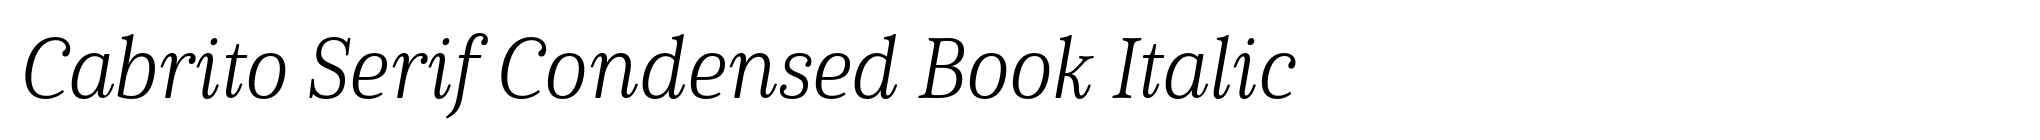 Cabrito Serif Condensed Book Italic image